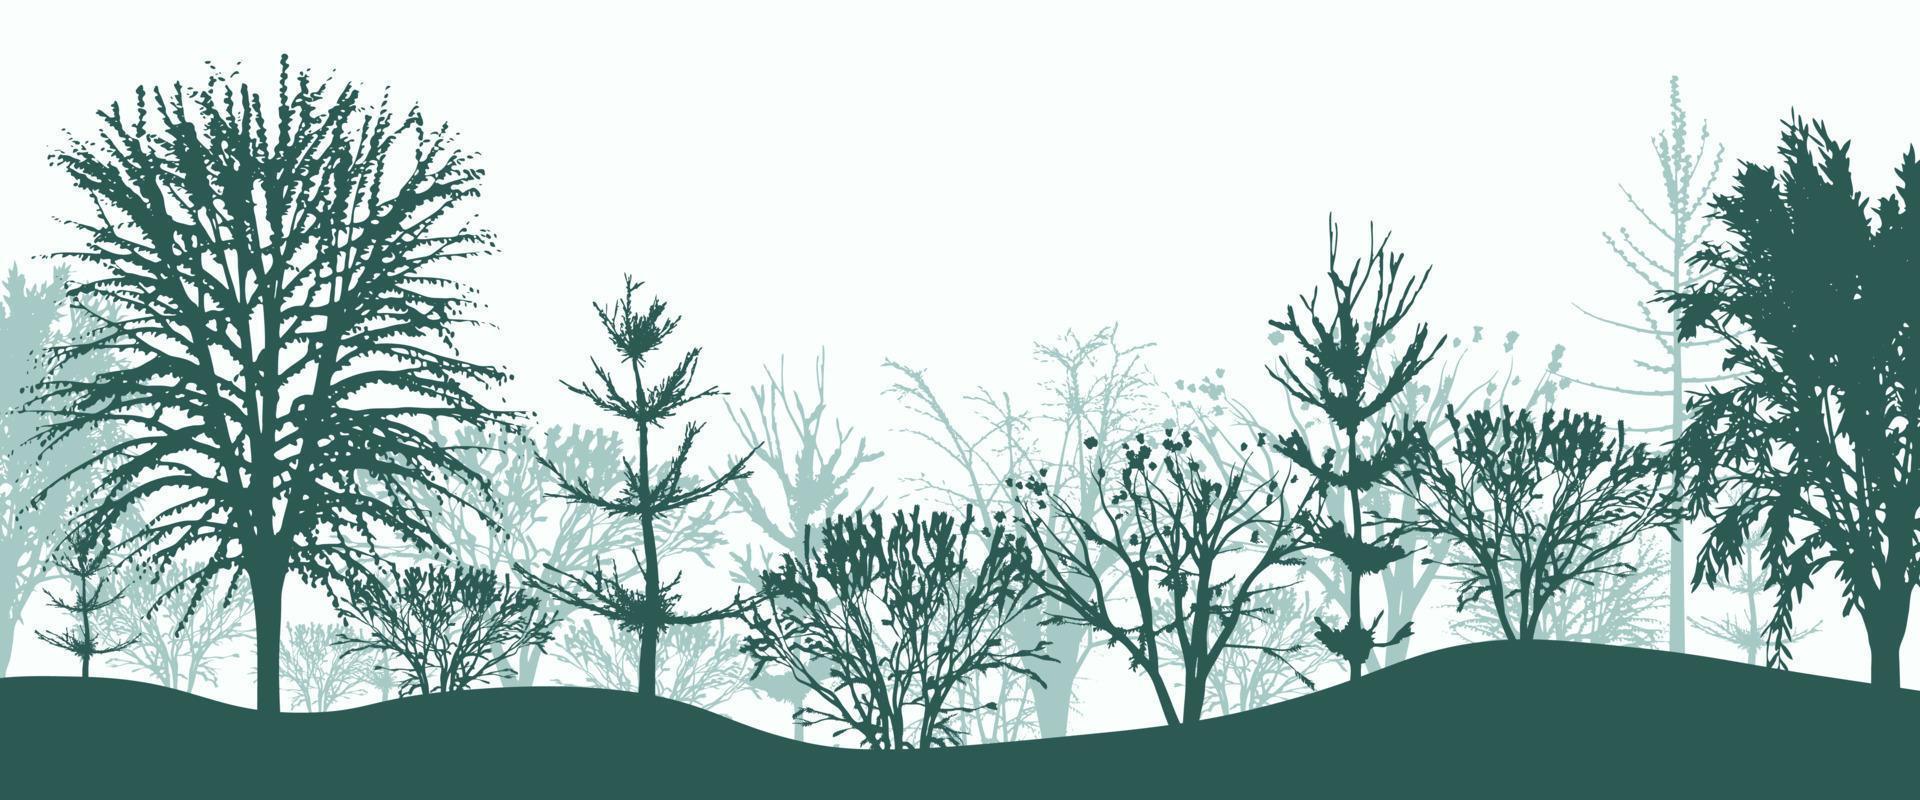 silhuetas verdes de árvores no fundo da floresta. matagal matinal místico de abetos e faias com arbustos em neblina leve. paisagem misteriosa em design vetorial natural vetor